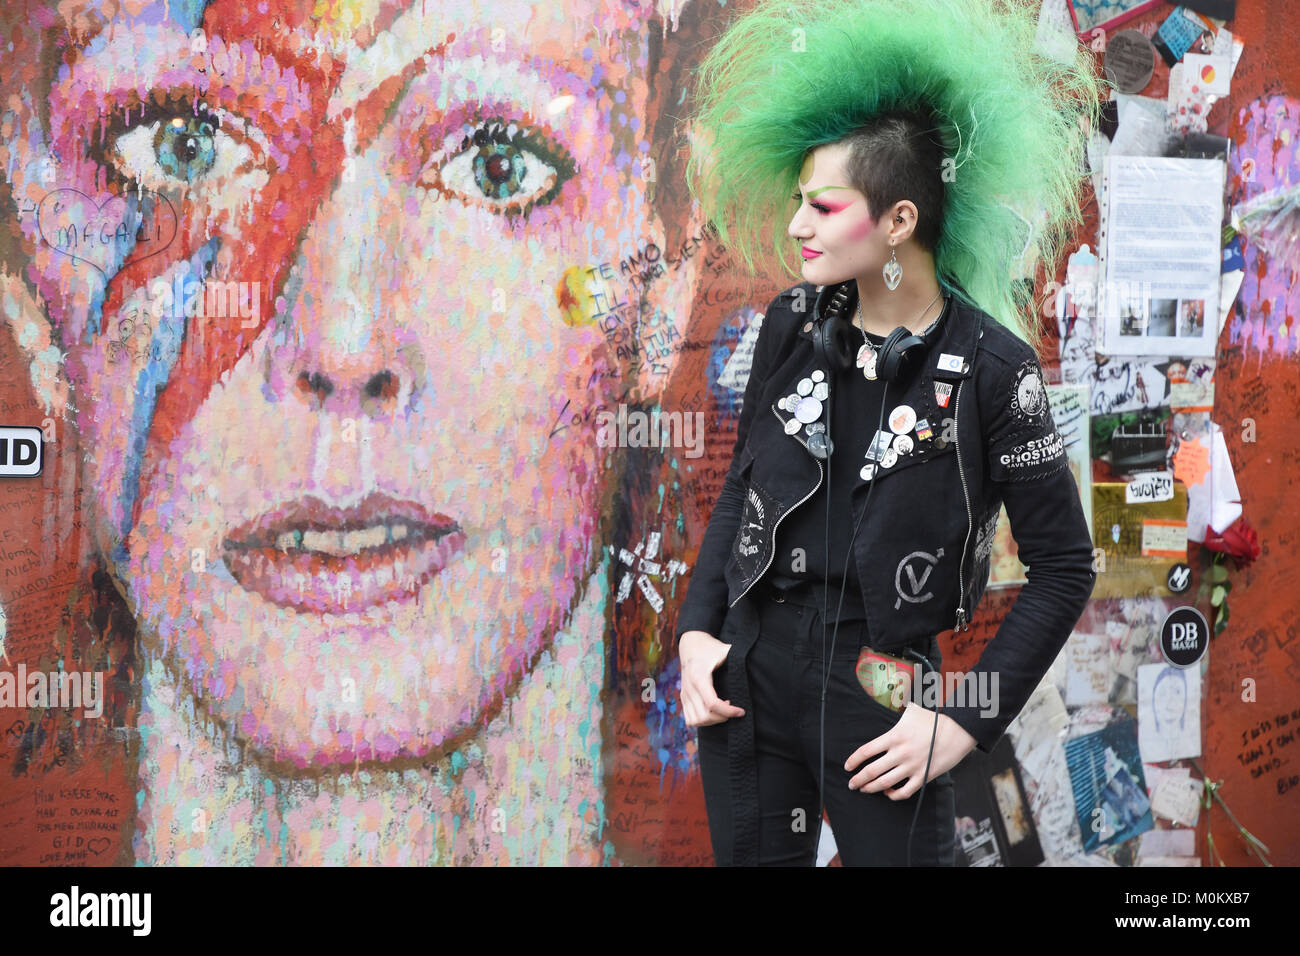 Punk lady pose à côté de la murale Aladdin Sane à Brixton, à l'occasion du deuxième anniversaire de la mort de David Bowie, le 10.01.2016, Brixton, Londres Banque D'Images